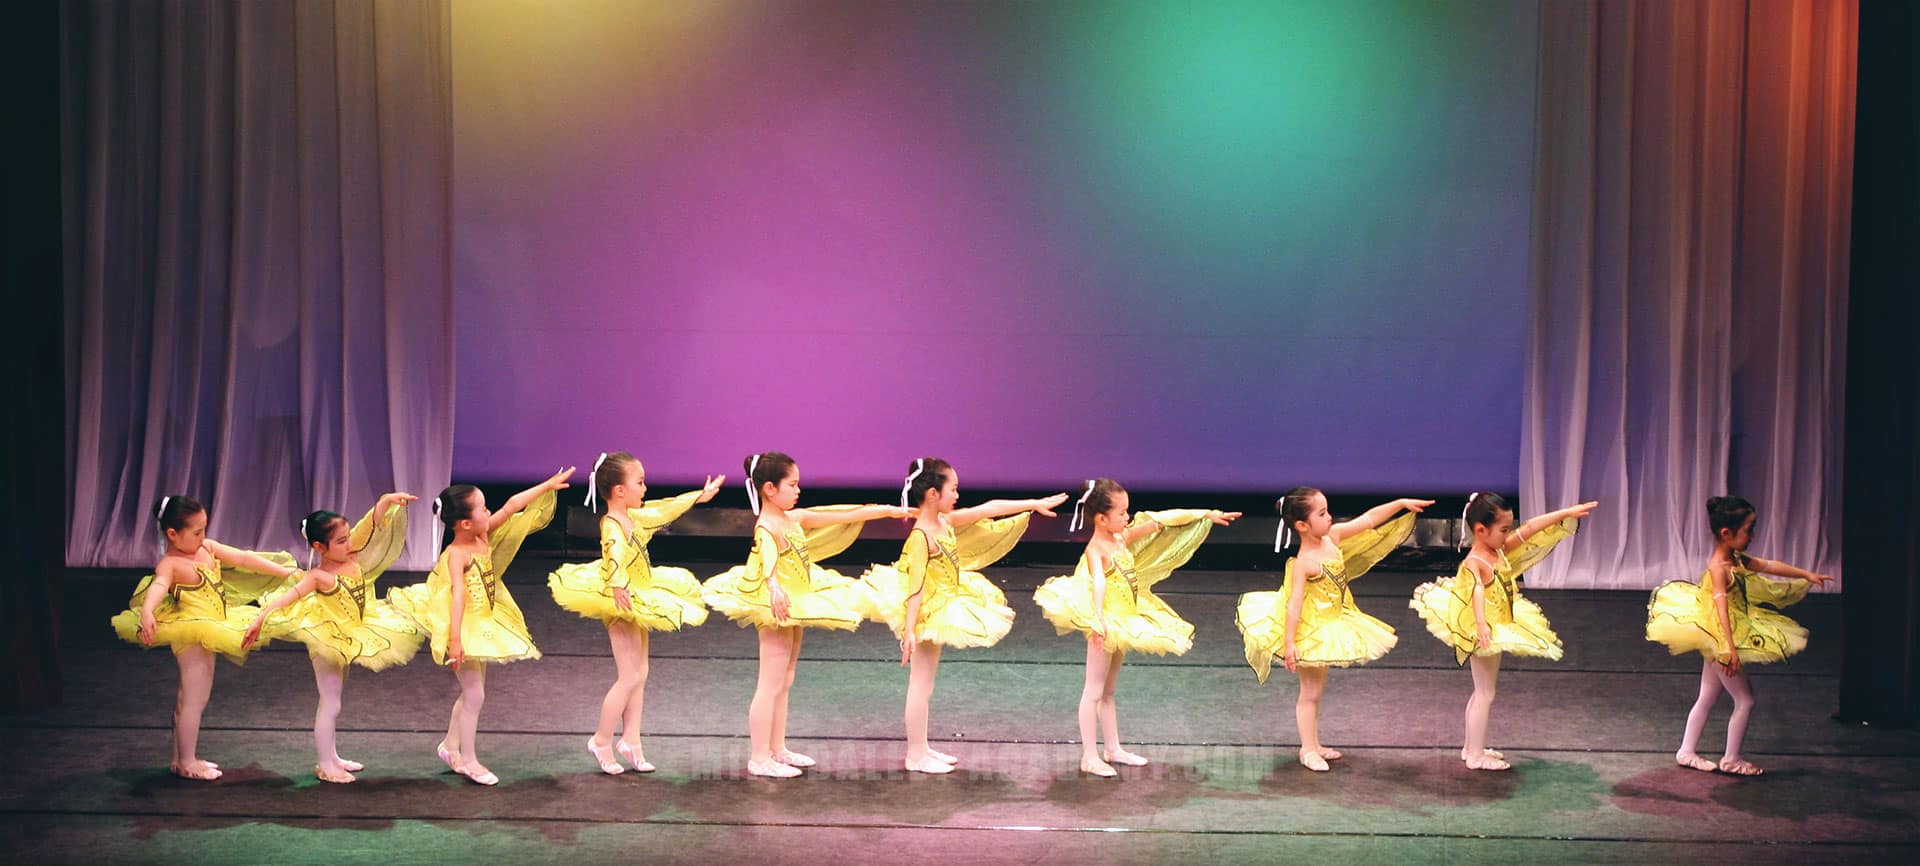 kids ballet dancers on stage